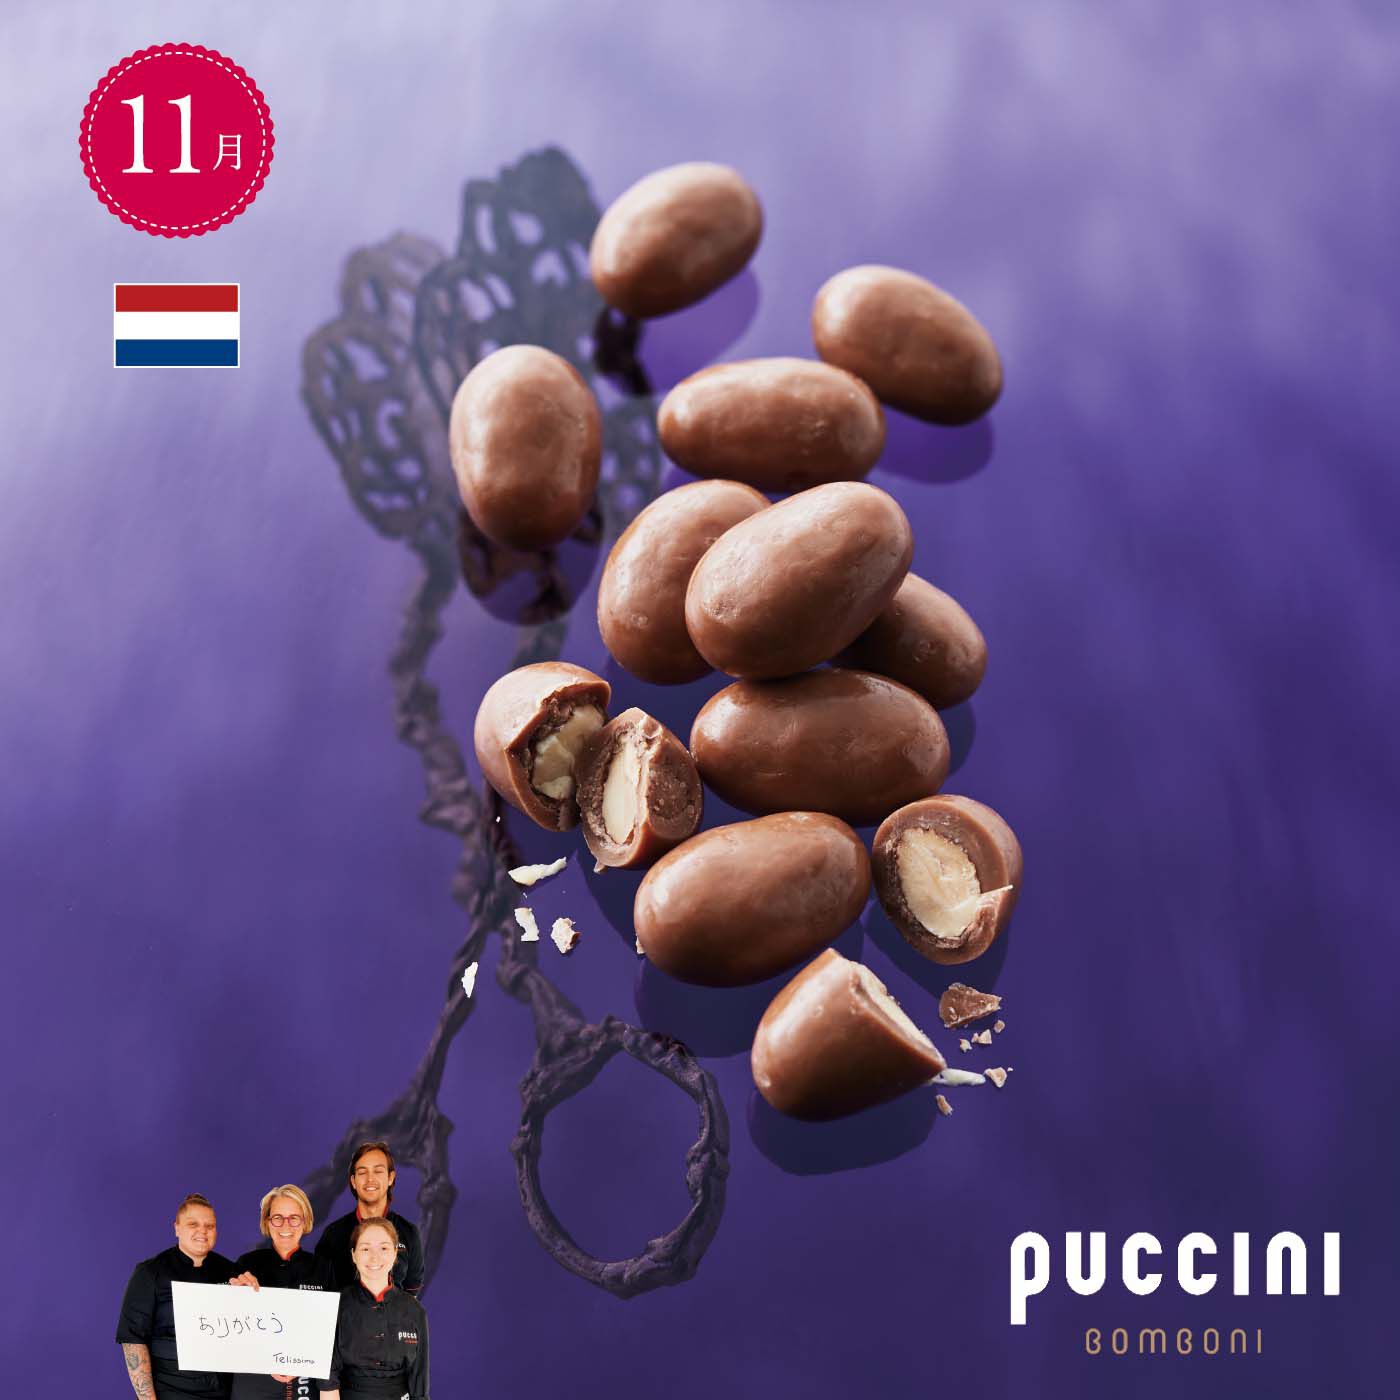 幸福のチョコレート|幸福のチョコレート メンバーサロン　ゴールドメンバーコース 〈12ヵ月コース〉|【11月】オランダ 〈プッチーニ ボンボーニ〉